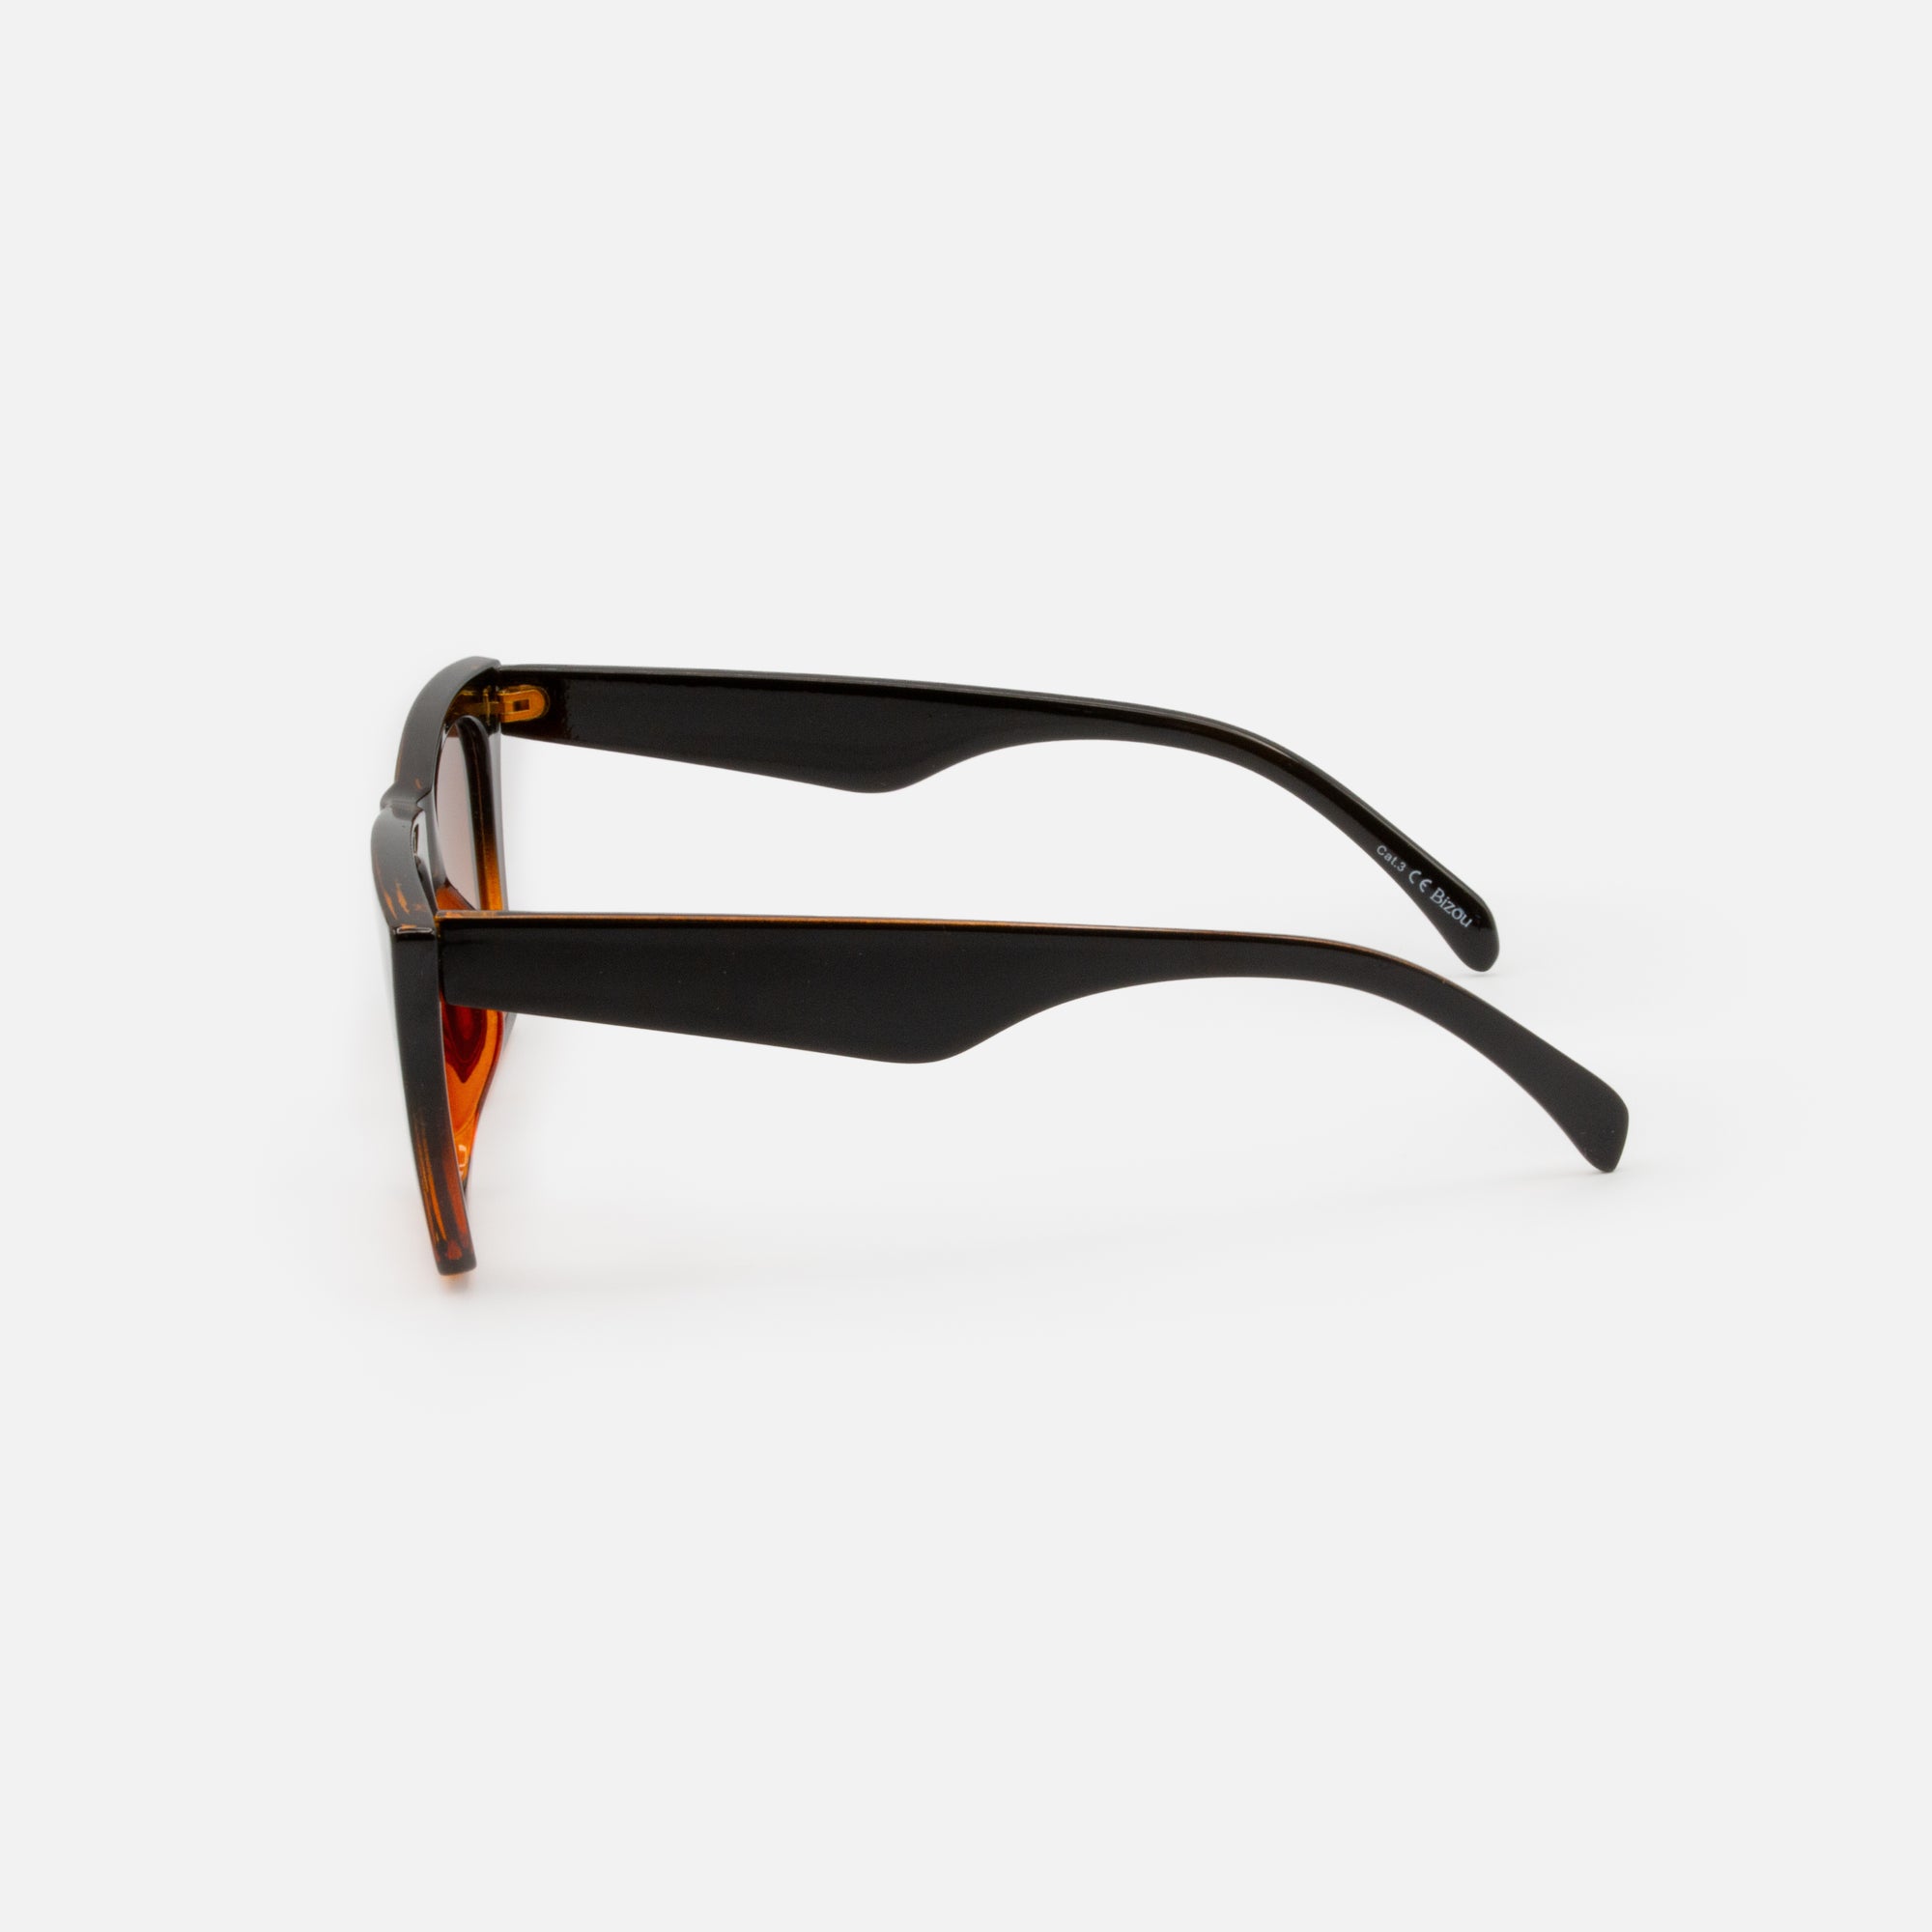 Black and tortoise gradient angular cat-eye sunglasses